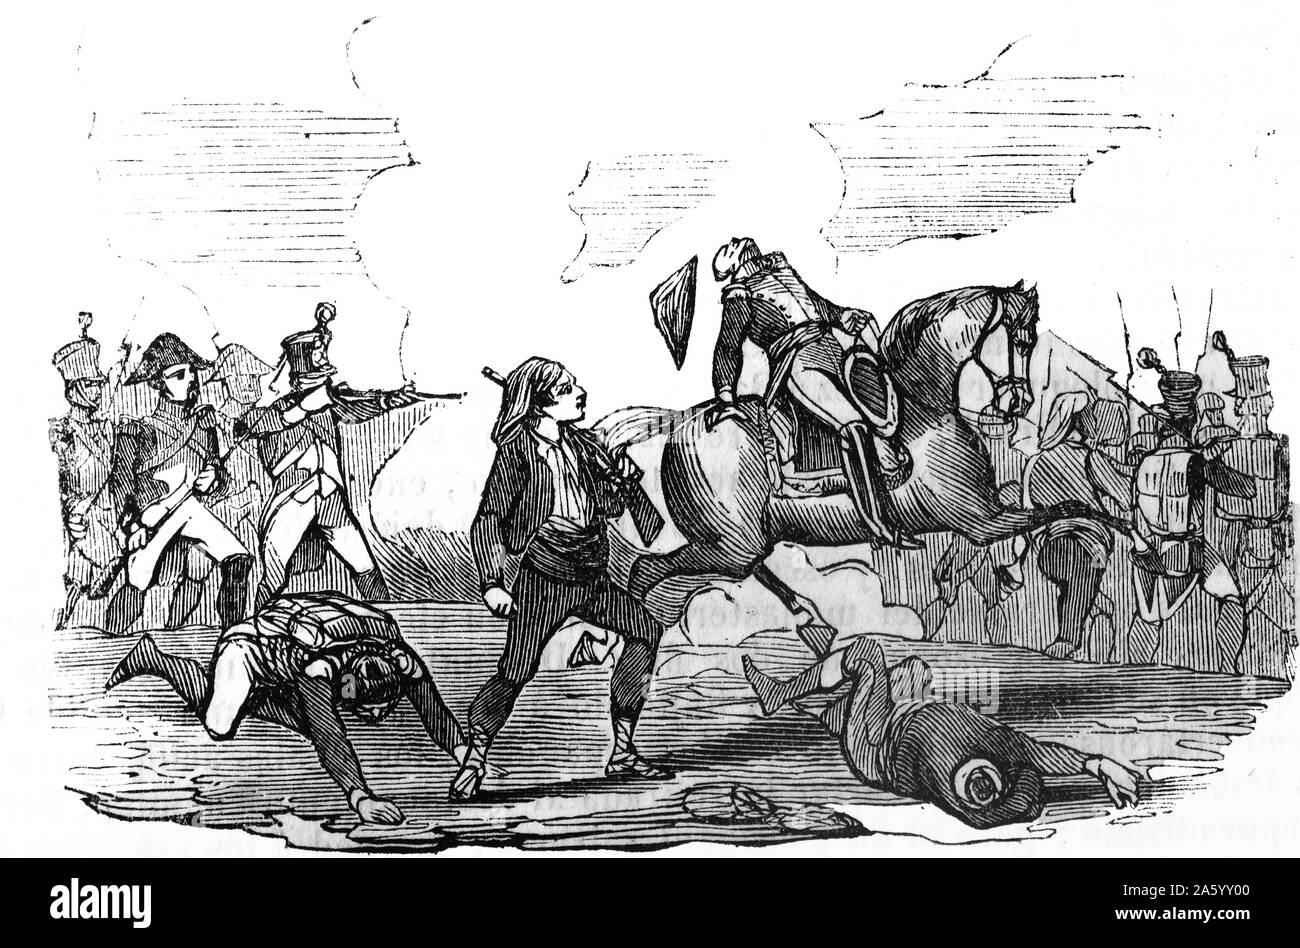 Stich zeigt die Schlacht von Valls, kämpfte während des Unabhängigkeitskrieges zwischen eine französische Truppe unter General Gouvion Saint-Cyr und eine spanische Truppe unter General Reding. Vom Jahre 1809 Stockfoto